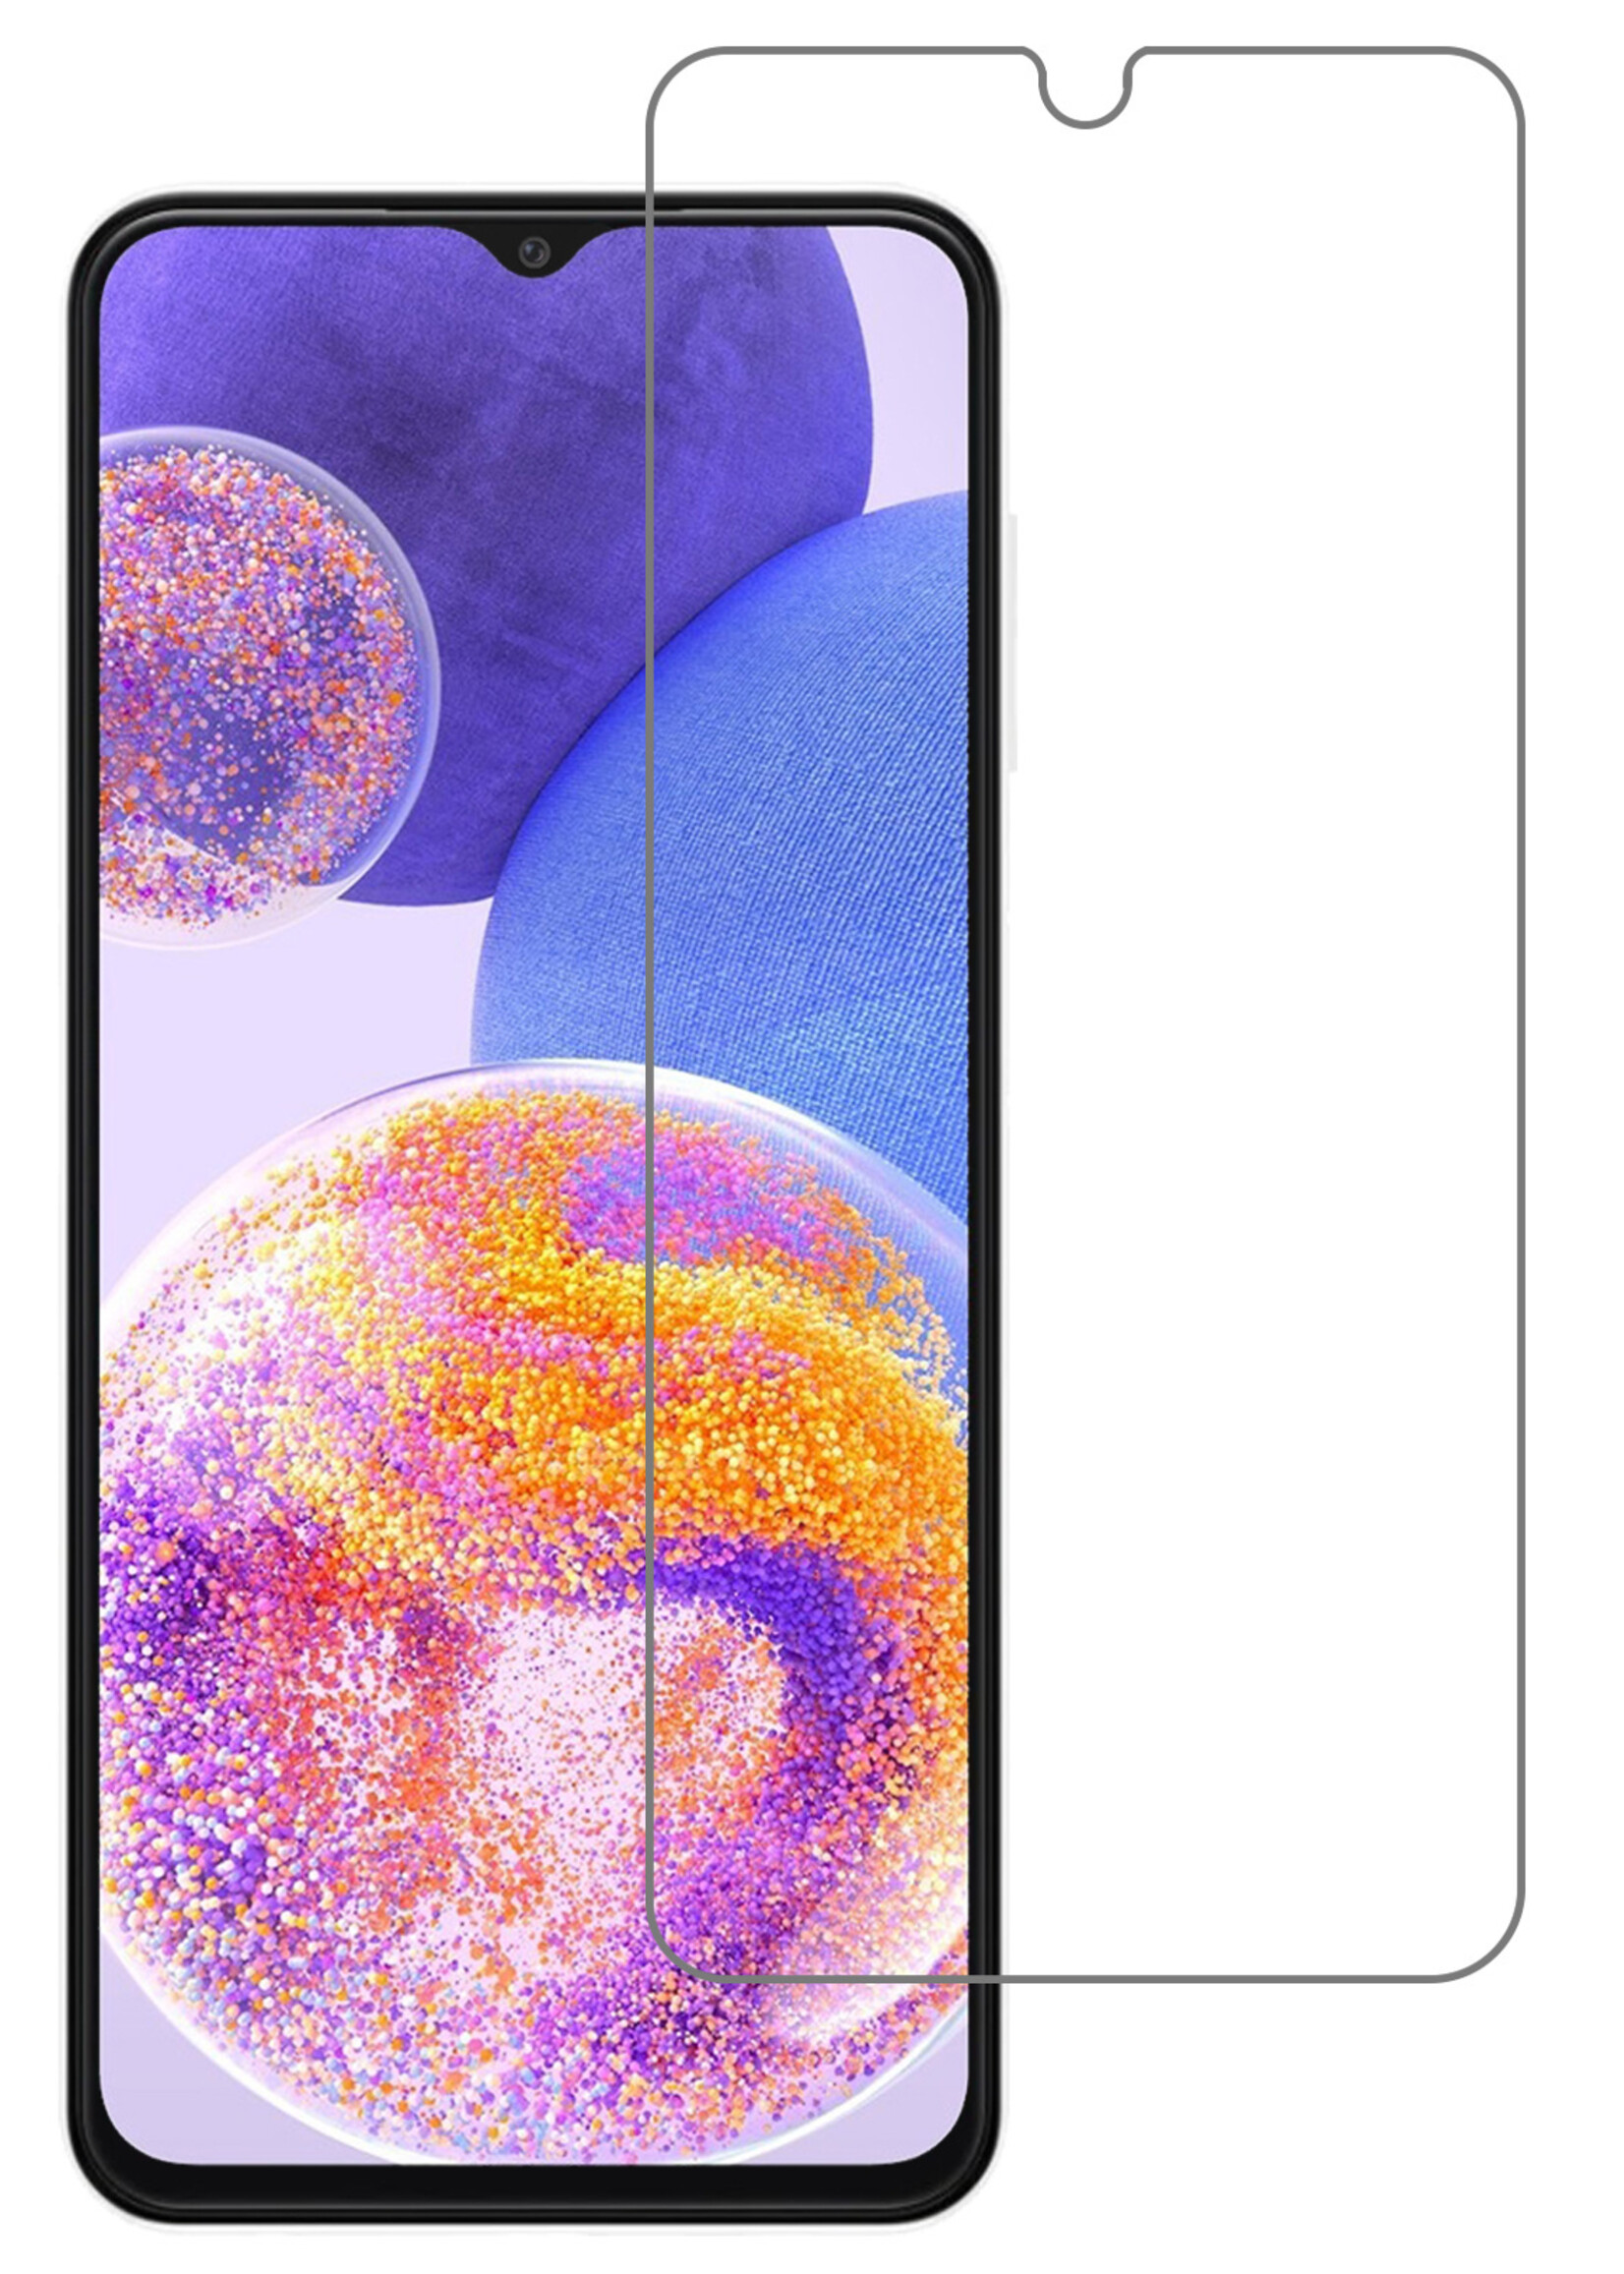 BTH Samsung A23 Screenprotector Glas Gehard Tempered Glass - Samsung Galaxy A23 Screen Protector Screen Cover